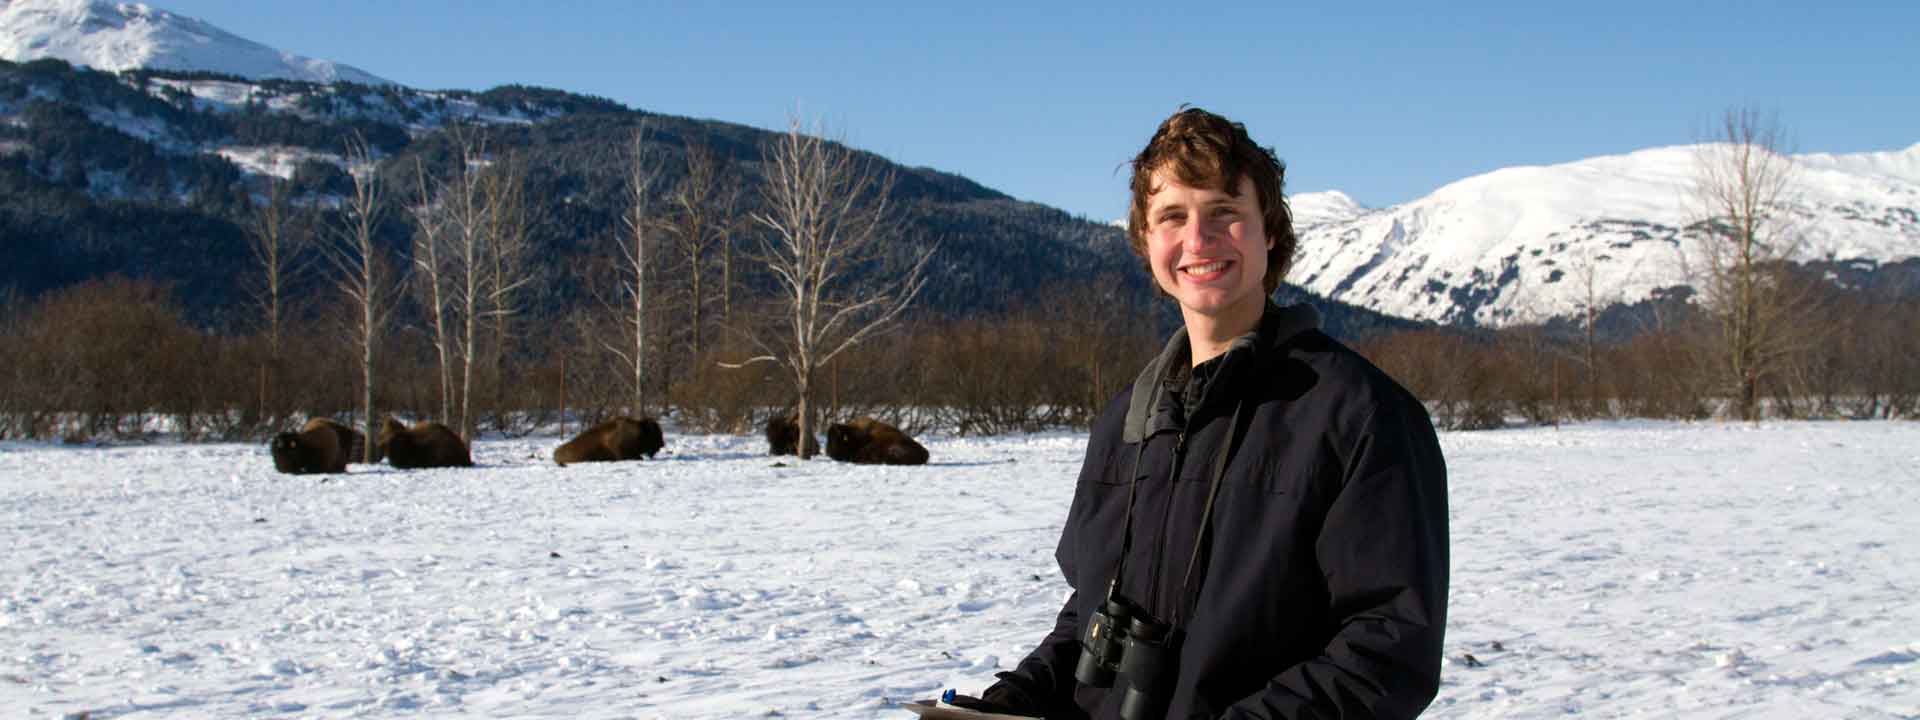 UAF student Luke Rogers studying bison